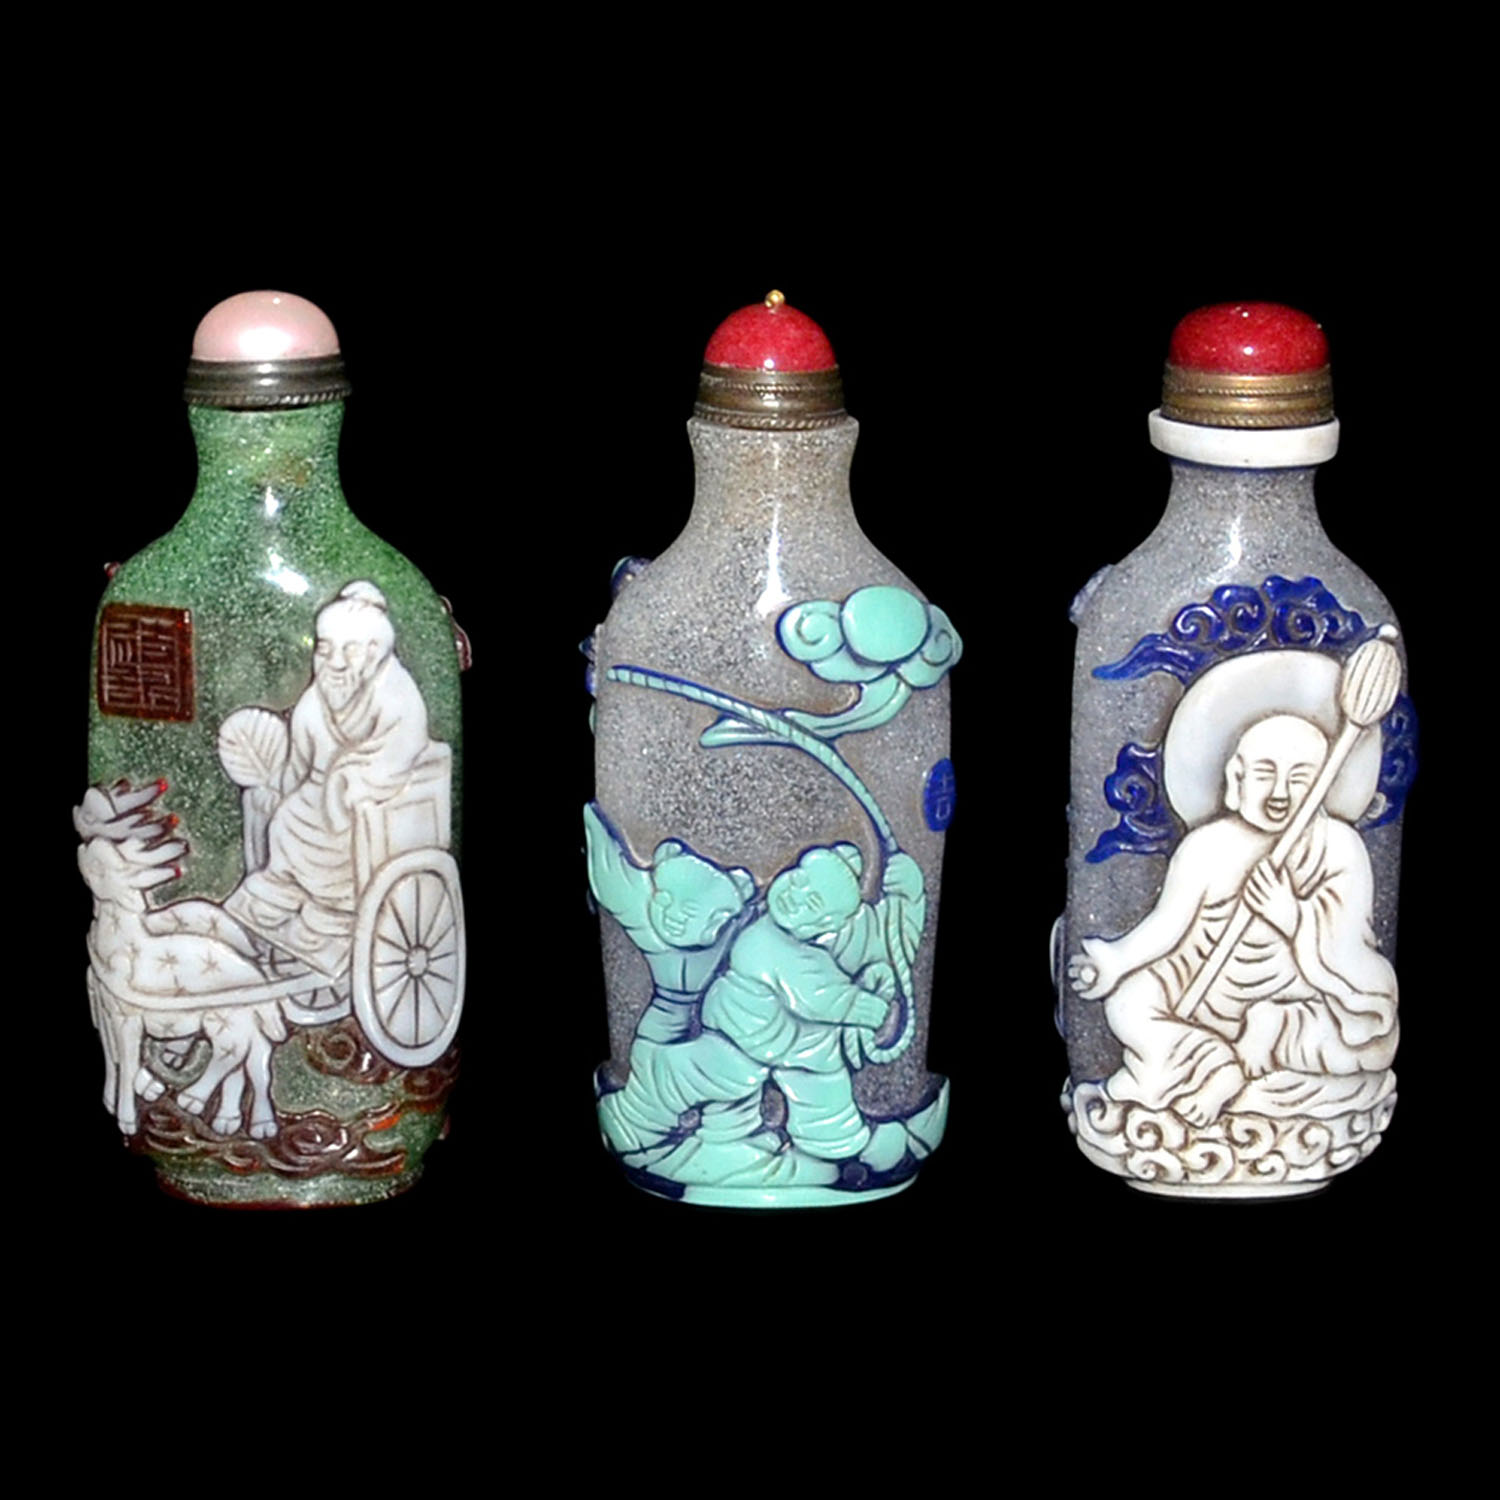 料彩童戲、羅漢、仙人鹿車鼻煙壺一套三件 Assorted Three Overlay Glass Snuff Bottles with Carved Luohan, Children at